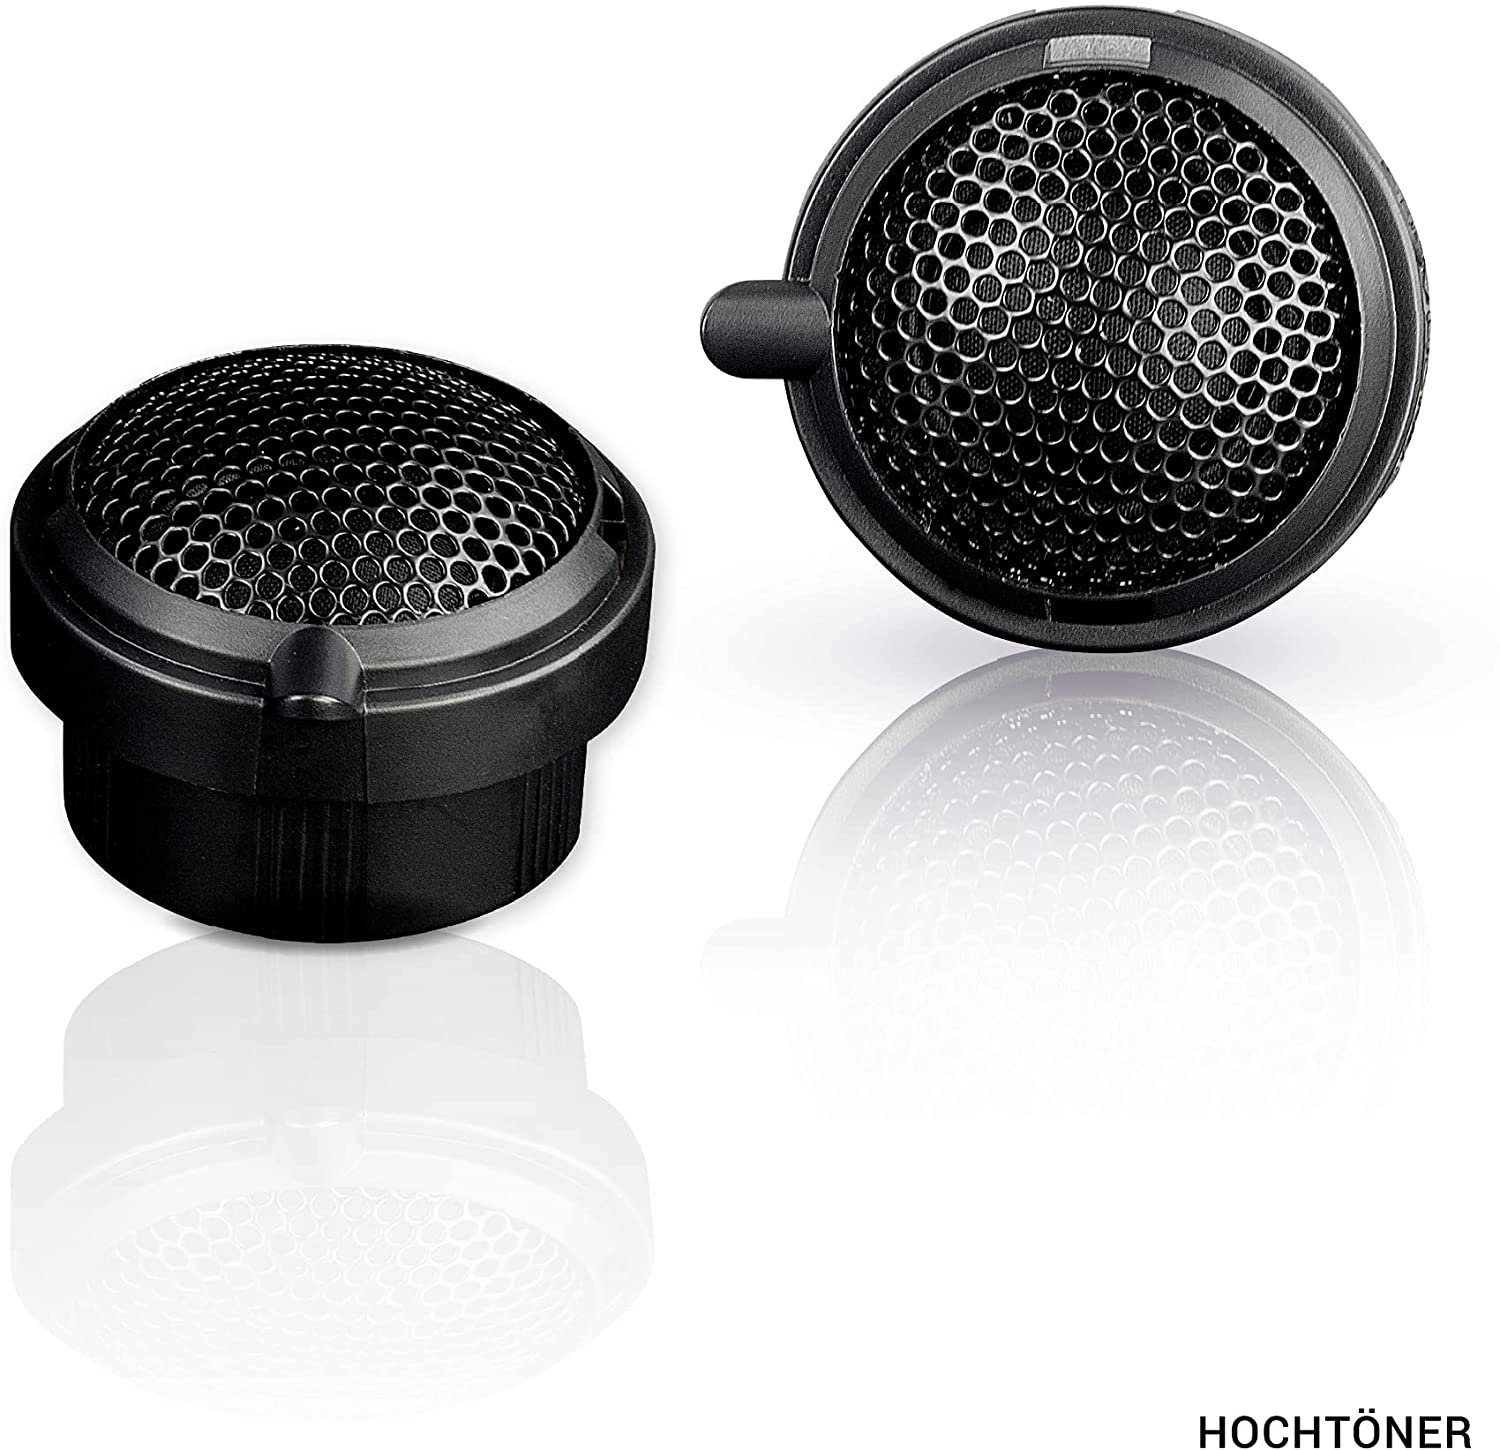 Auto-Lautsprecher Sprinter 2.1 Emphaser für Lautsprecher MBF3 Mercedes EmPhaser